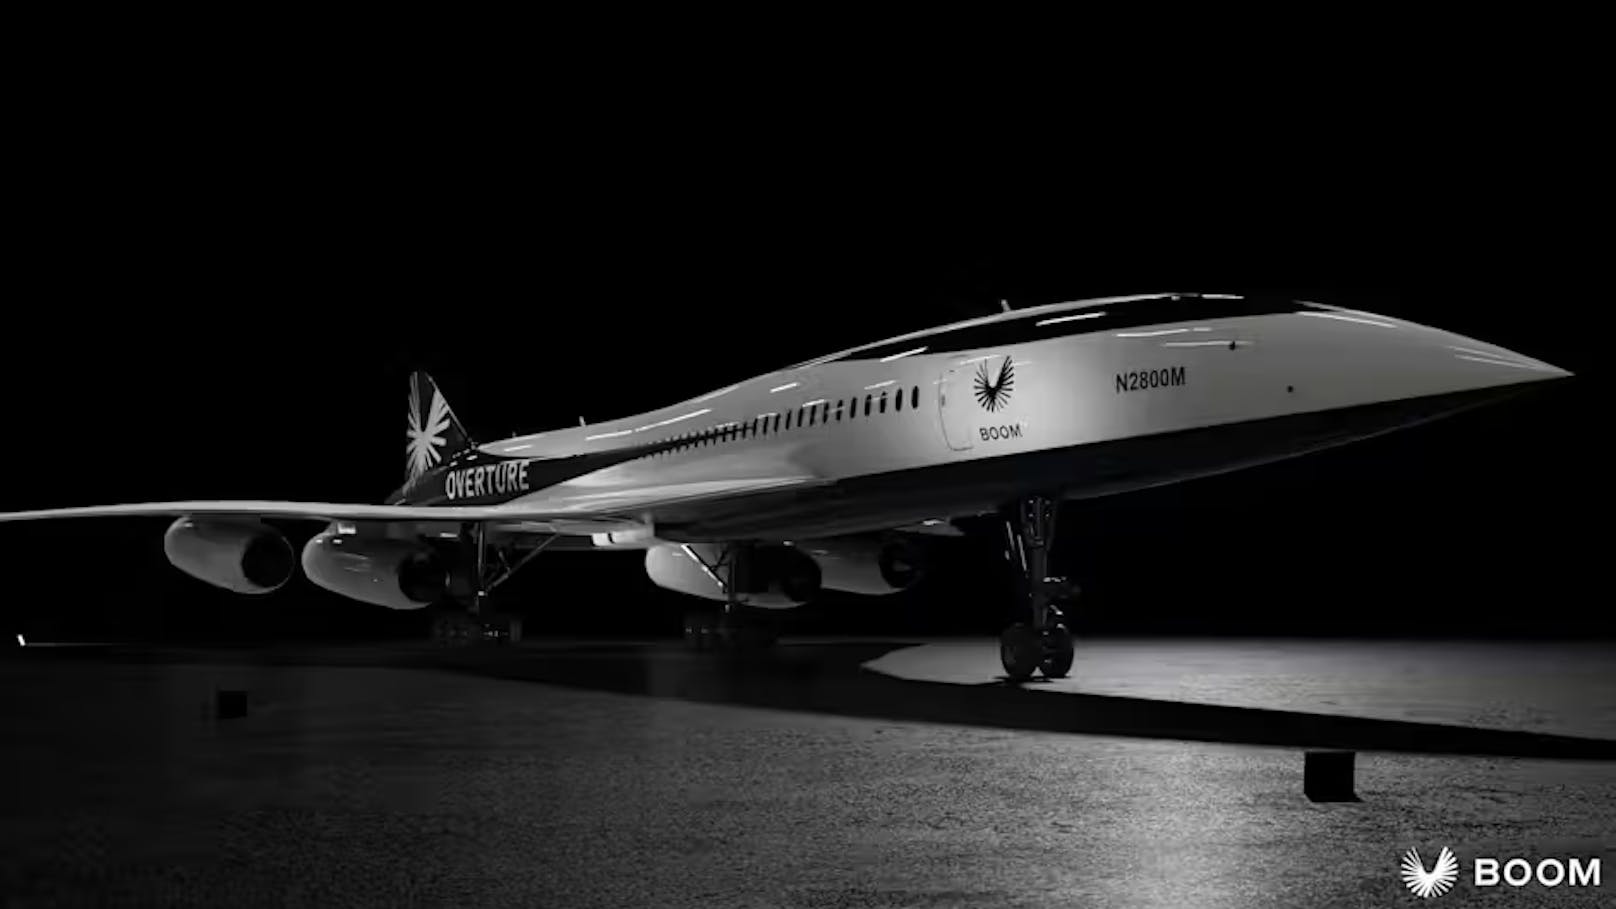 Die US-Firma Boom arbeitet derzeit an dem "Overture"-Jet, der für 55 Passagiere ausgelegt ist und sowohl schneller als auch effizienter als die Concorde sein soll.